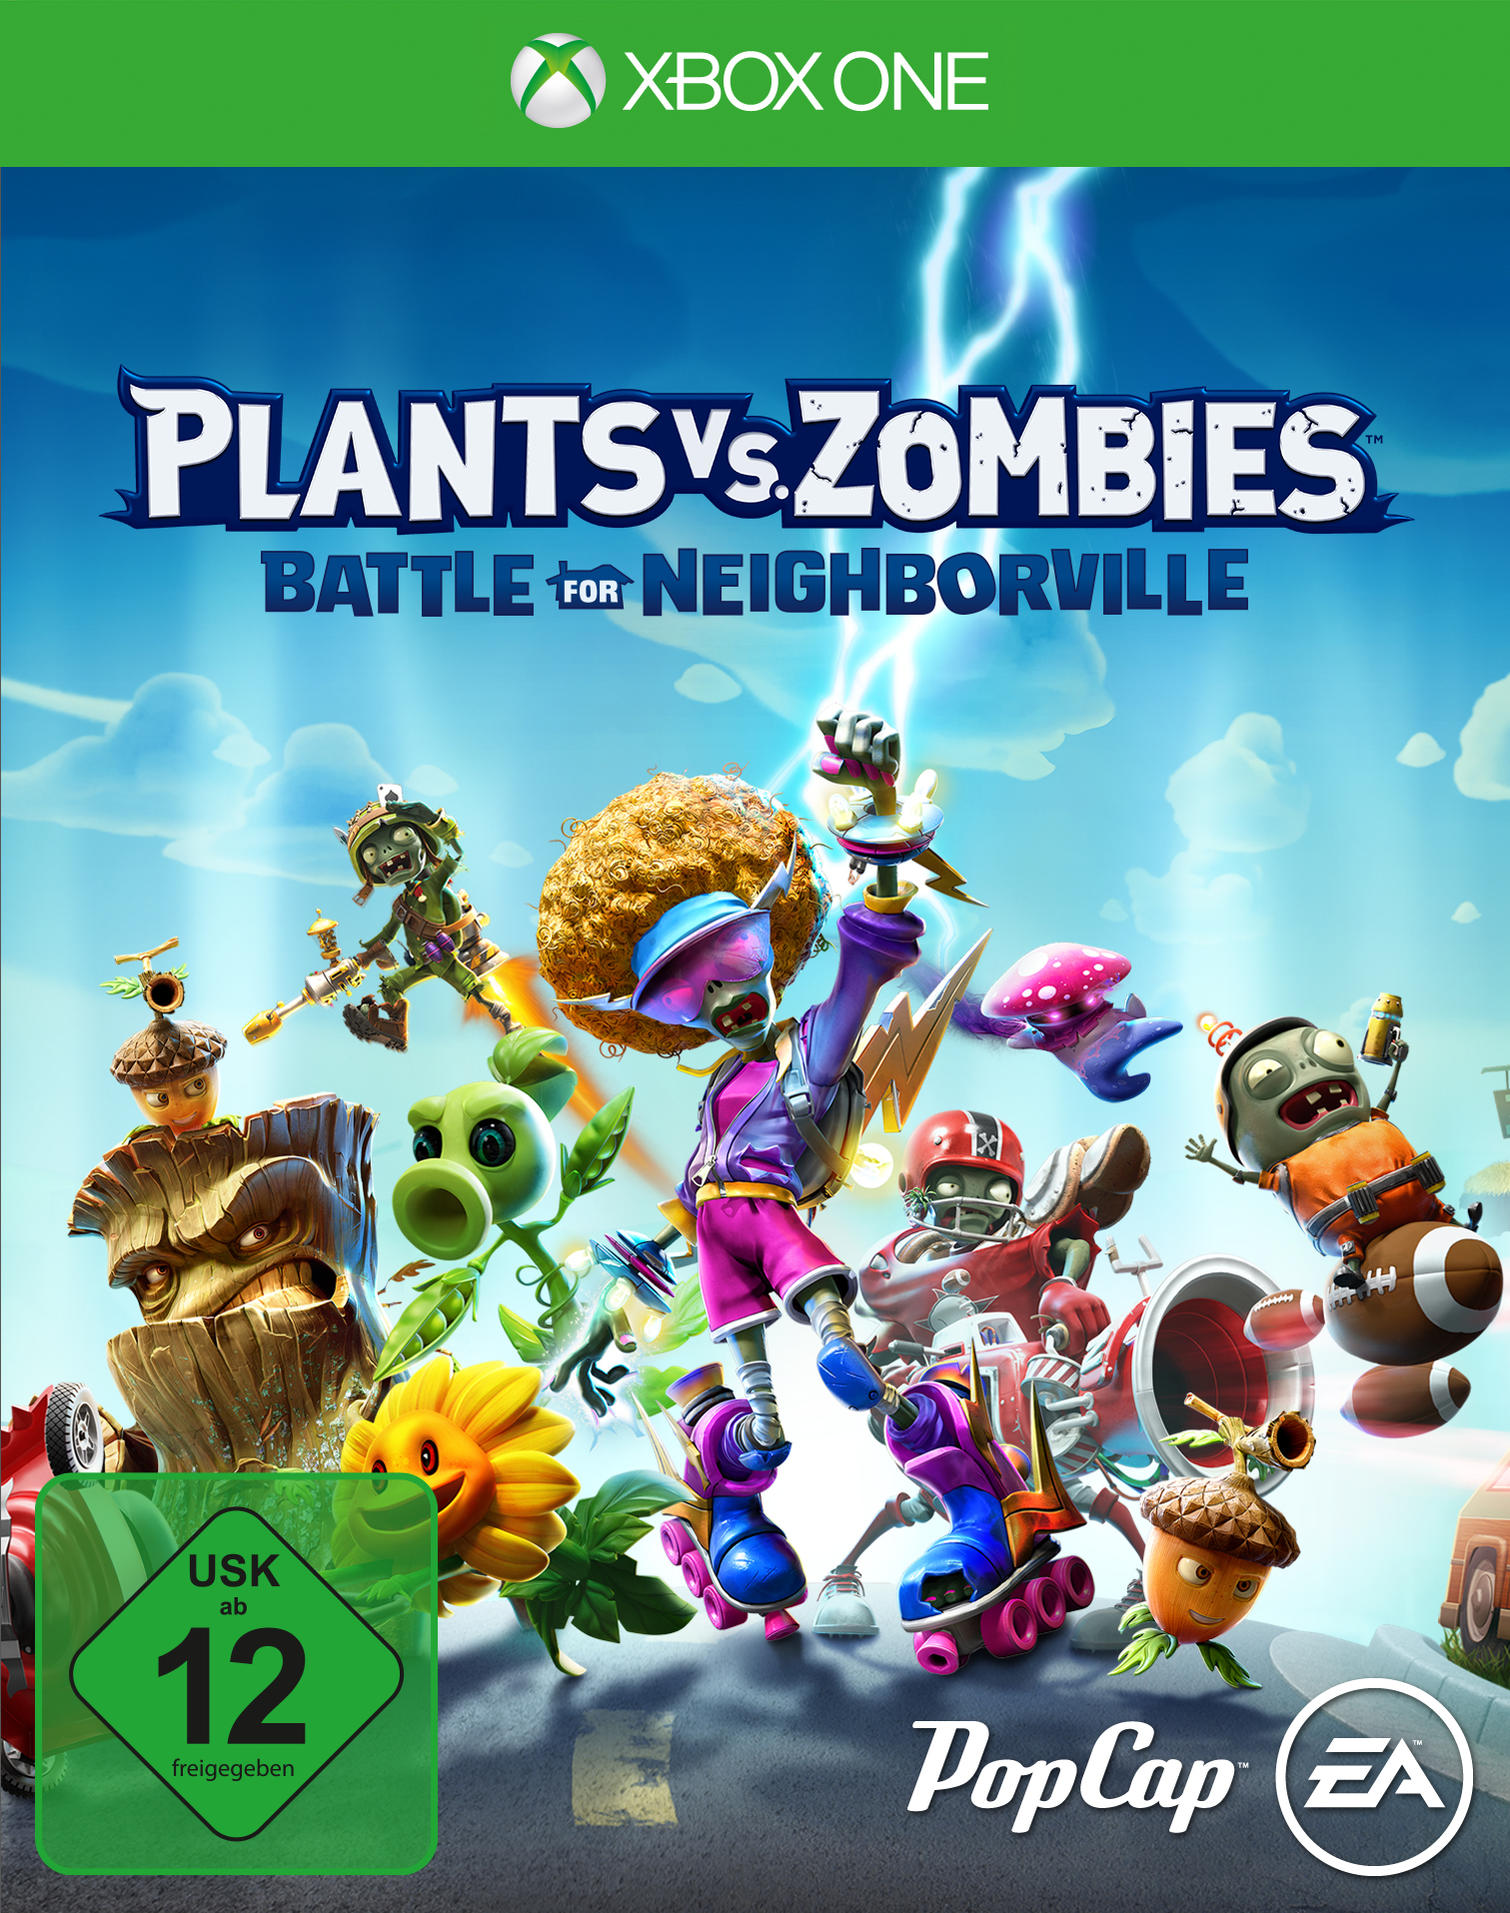 Plants vs. Zombies: Schlacht um Neighborville - One] [Xbox